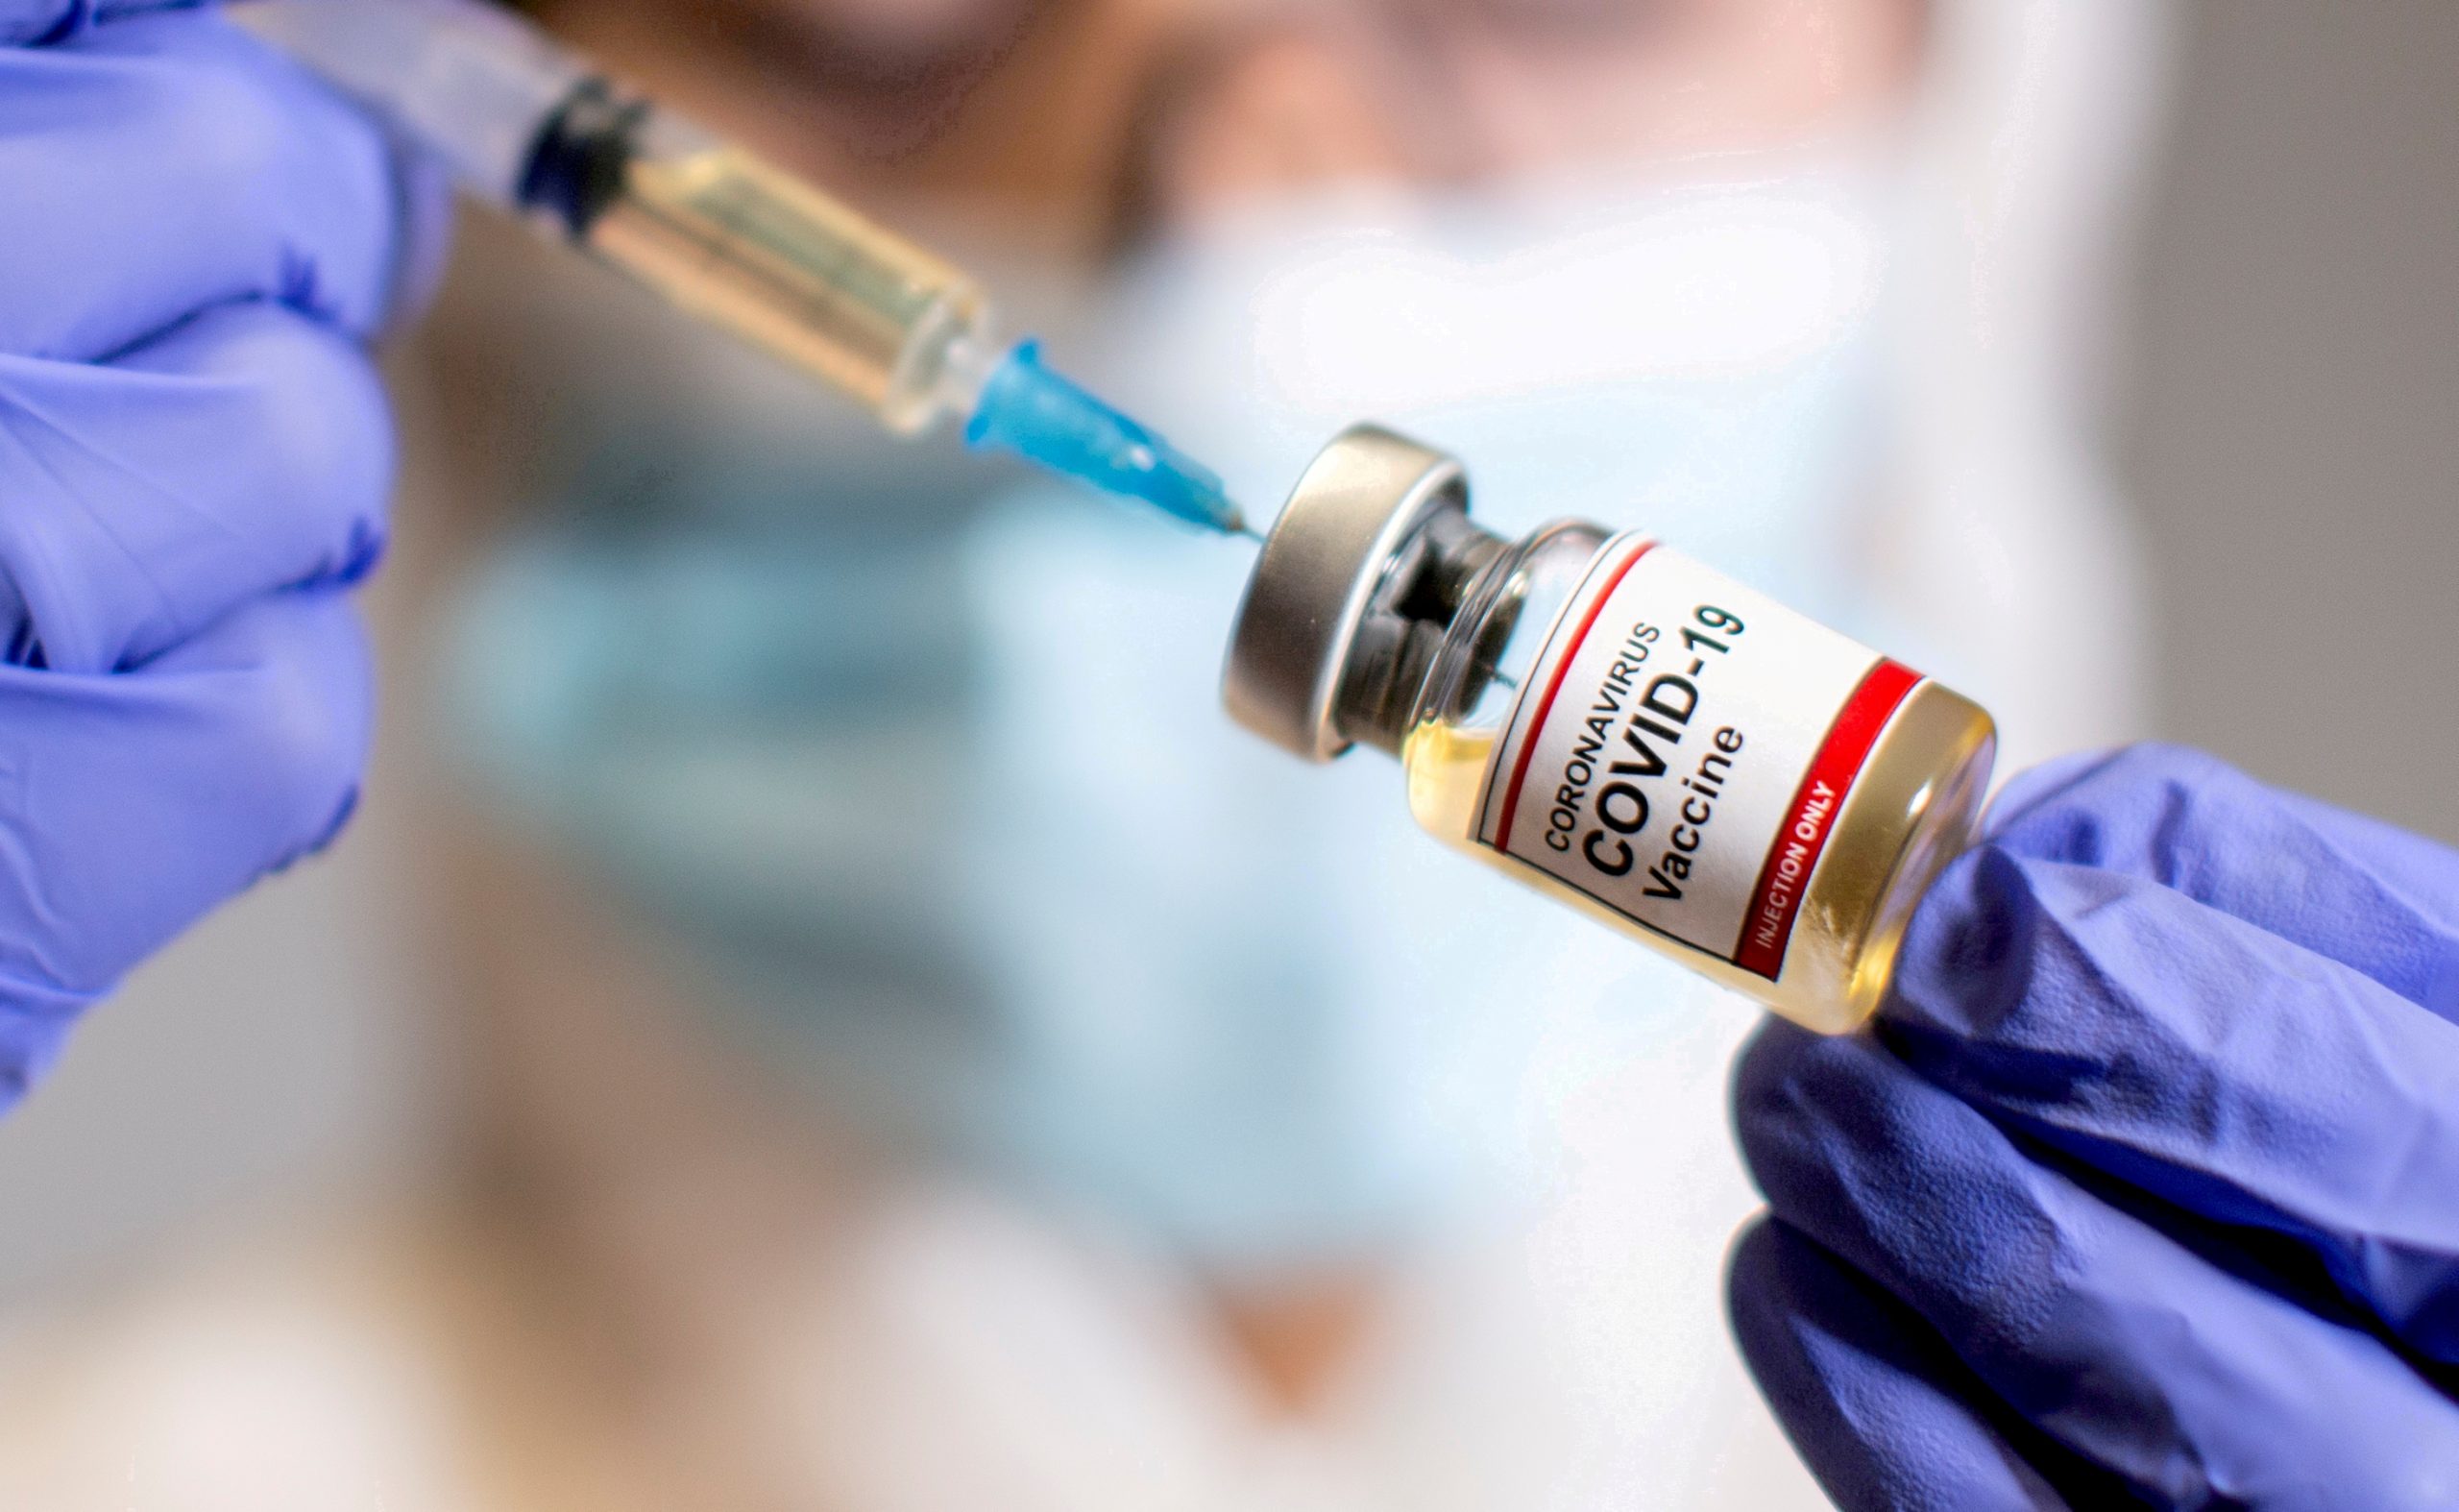 Κορωνοϊός : Πράσινο φως από τον ΕΜΑ για 2 ακόμη μονάδες παραγωγής εμβολίων